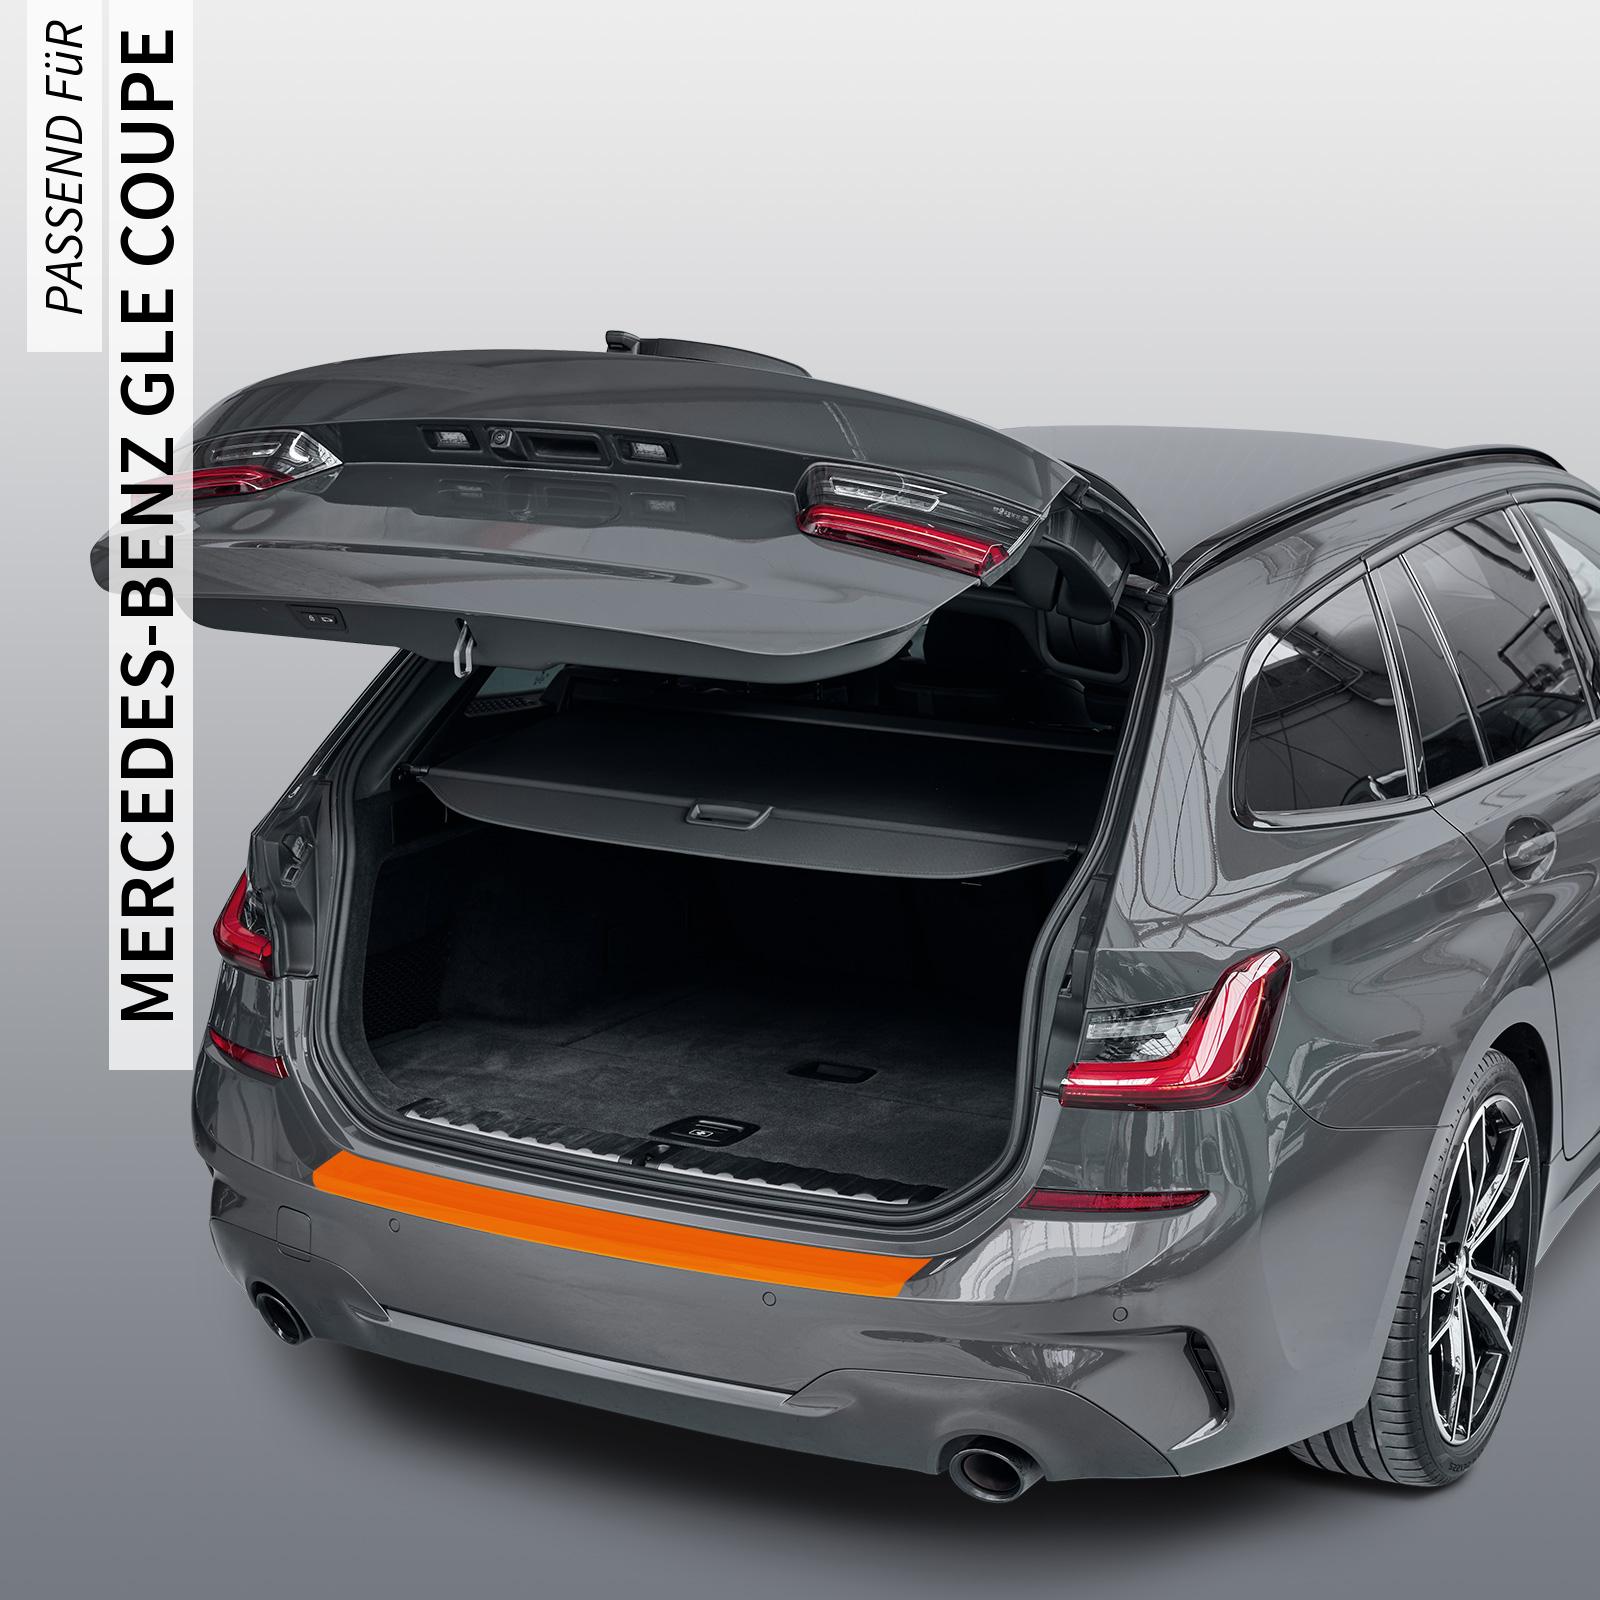 Ladekantenschutzfolie - Transparent Glatt MATT 110 µm stark  für Mercedes-Benz GLE Coupe Typ C167, ab BJ 2020